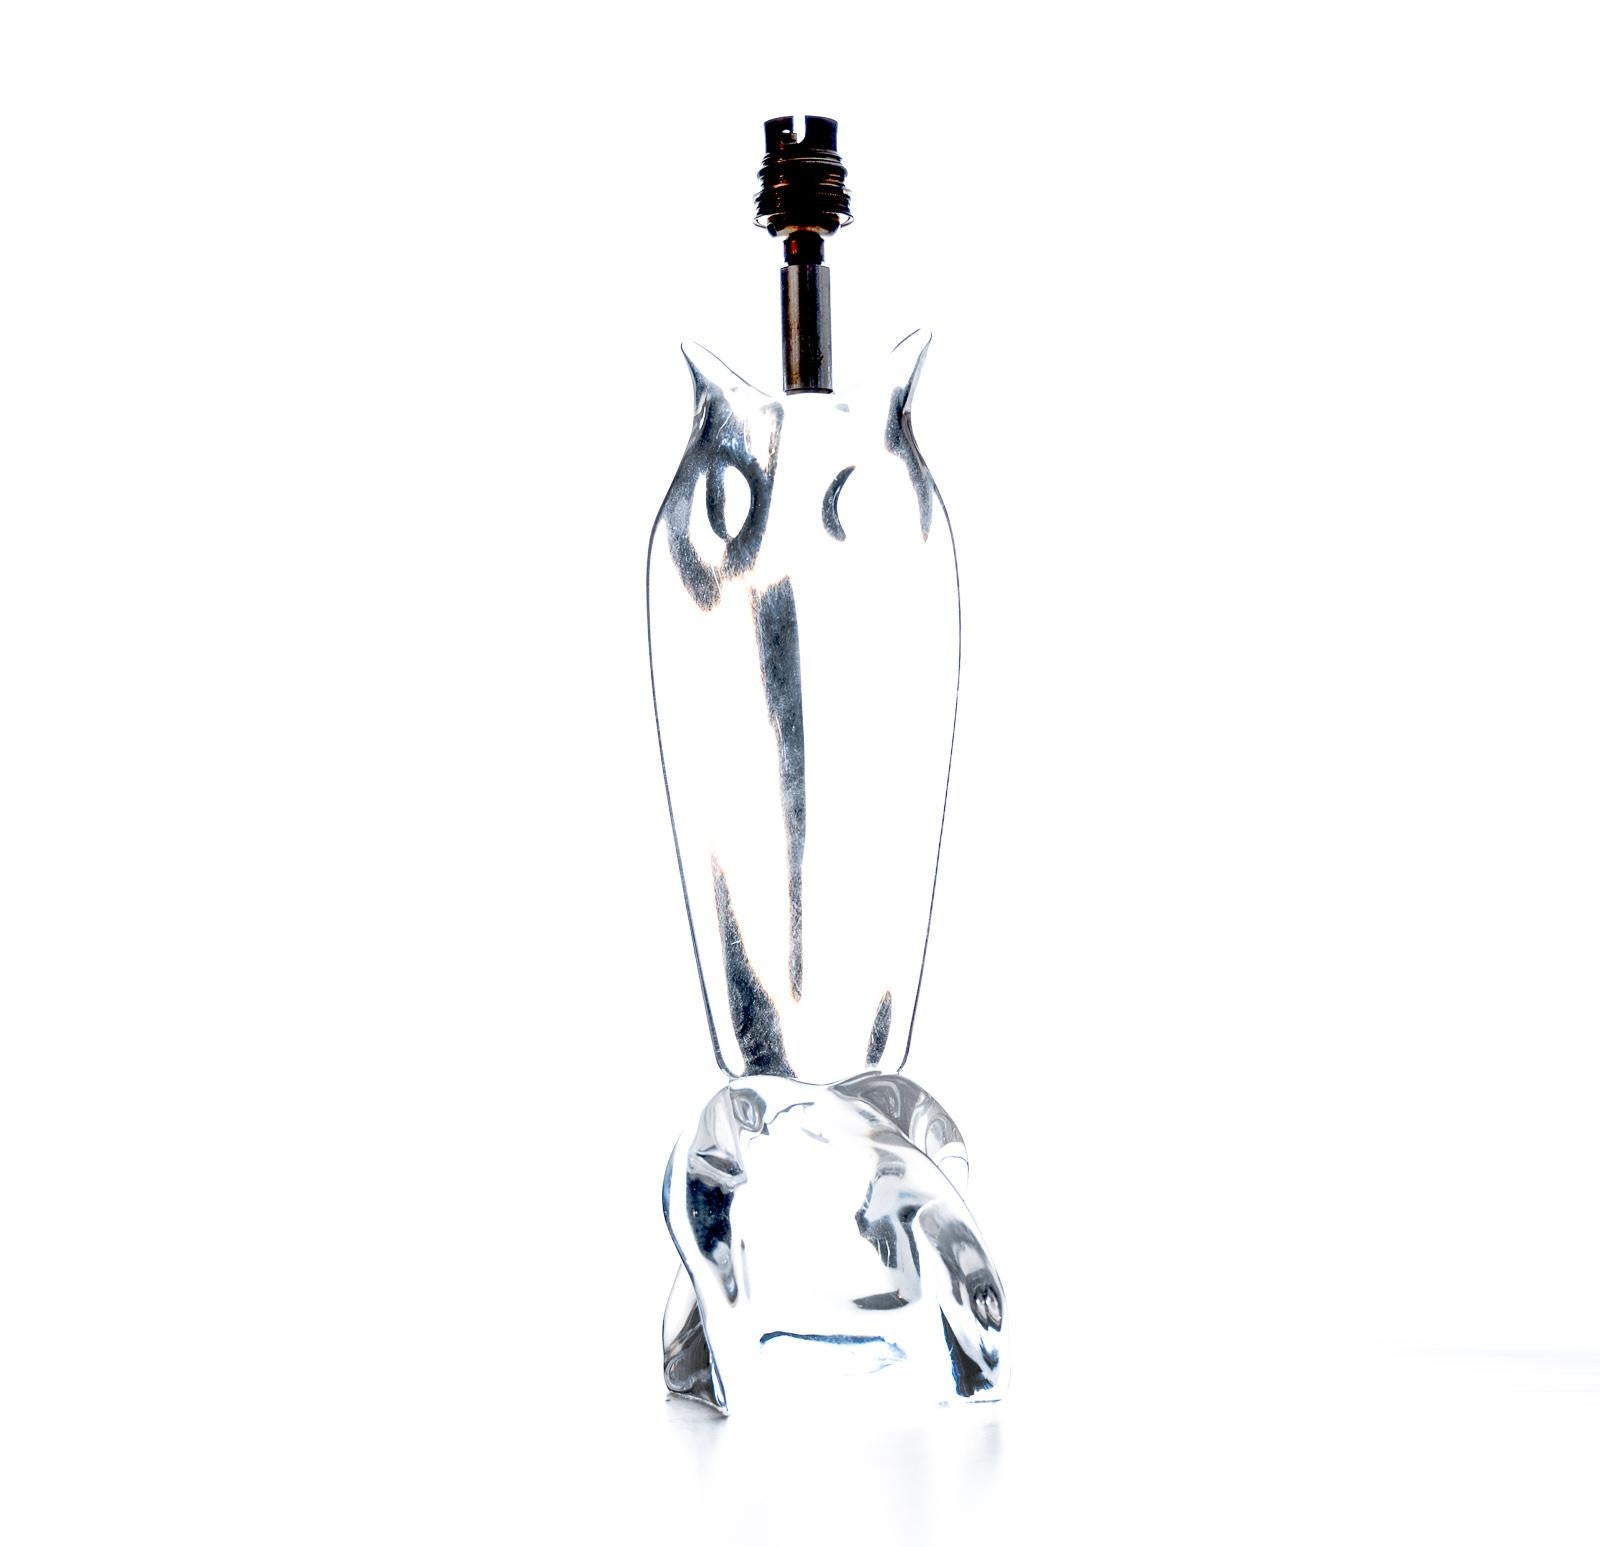 Pied de lampe en cristal français de Daum France - recâblé et prêt à l'emploi.
Signature gravée, Daum France, sur la base.
Dimensions avec l'abat-jour :
H - 57.5cm
W - 33.5cm
D - 14cm.